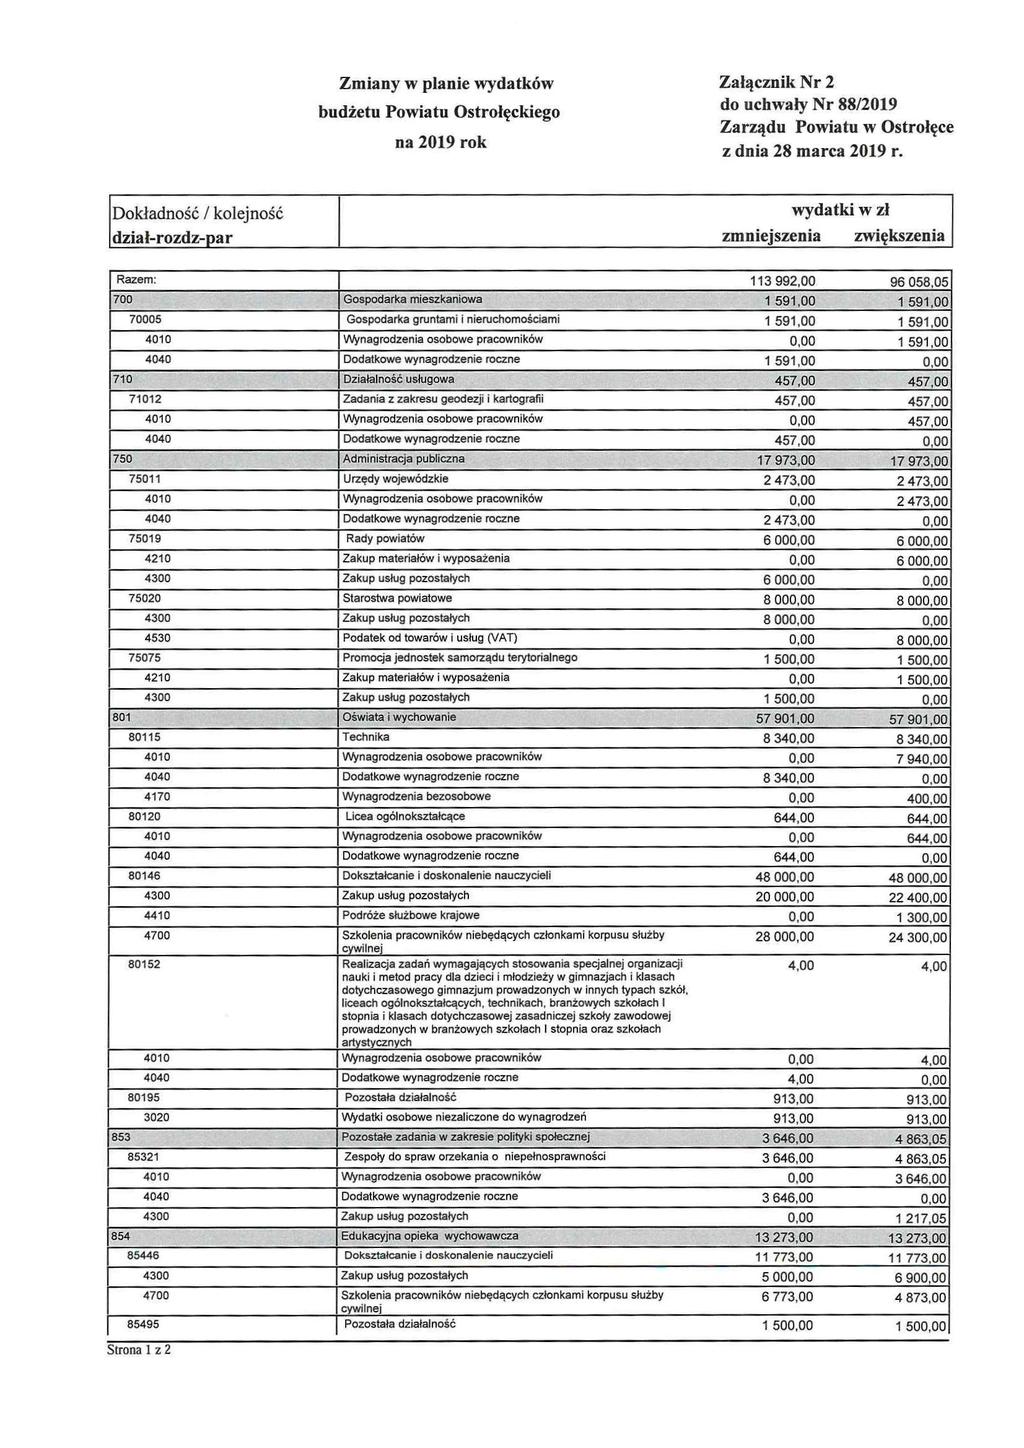 Zmiany w planie wydatków Załącznik Nr 2 budżetu Powiatu do uchwały Nr 88/2019 Ostrołęckiego Zarządu Powiatu w Ostrołęce z dnia 28 marca 2019 r.